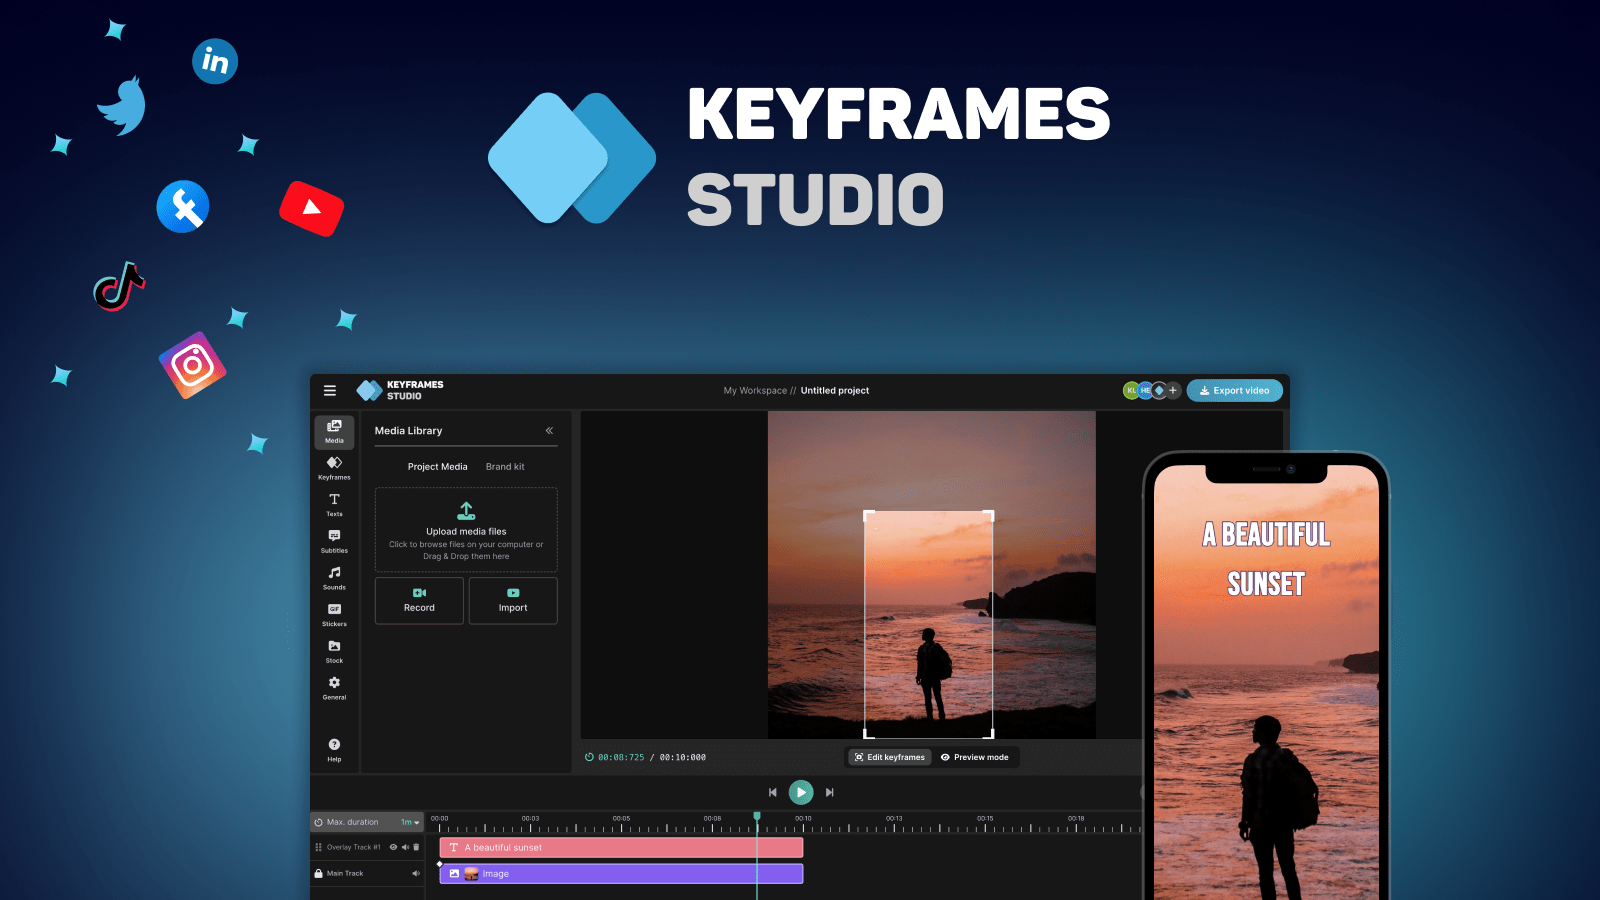 Keystrames.Studio-Eine All-in-One-Videobearbeitungsplattform zum Erstellen, Bearbeiten und Teilen von Videos in den sozialen Medien